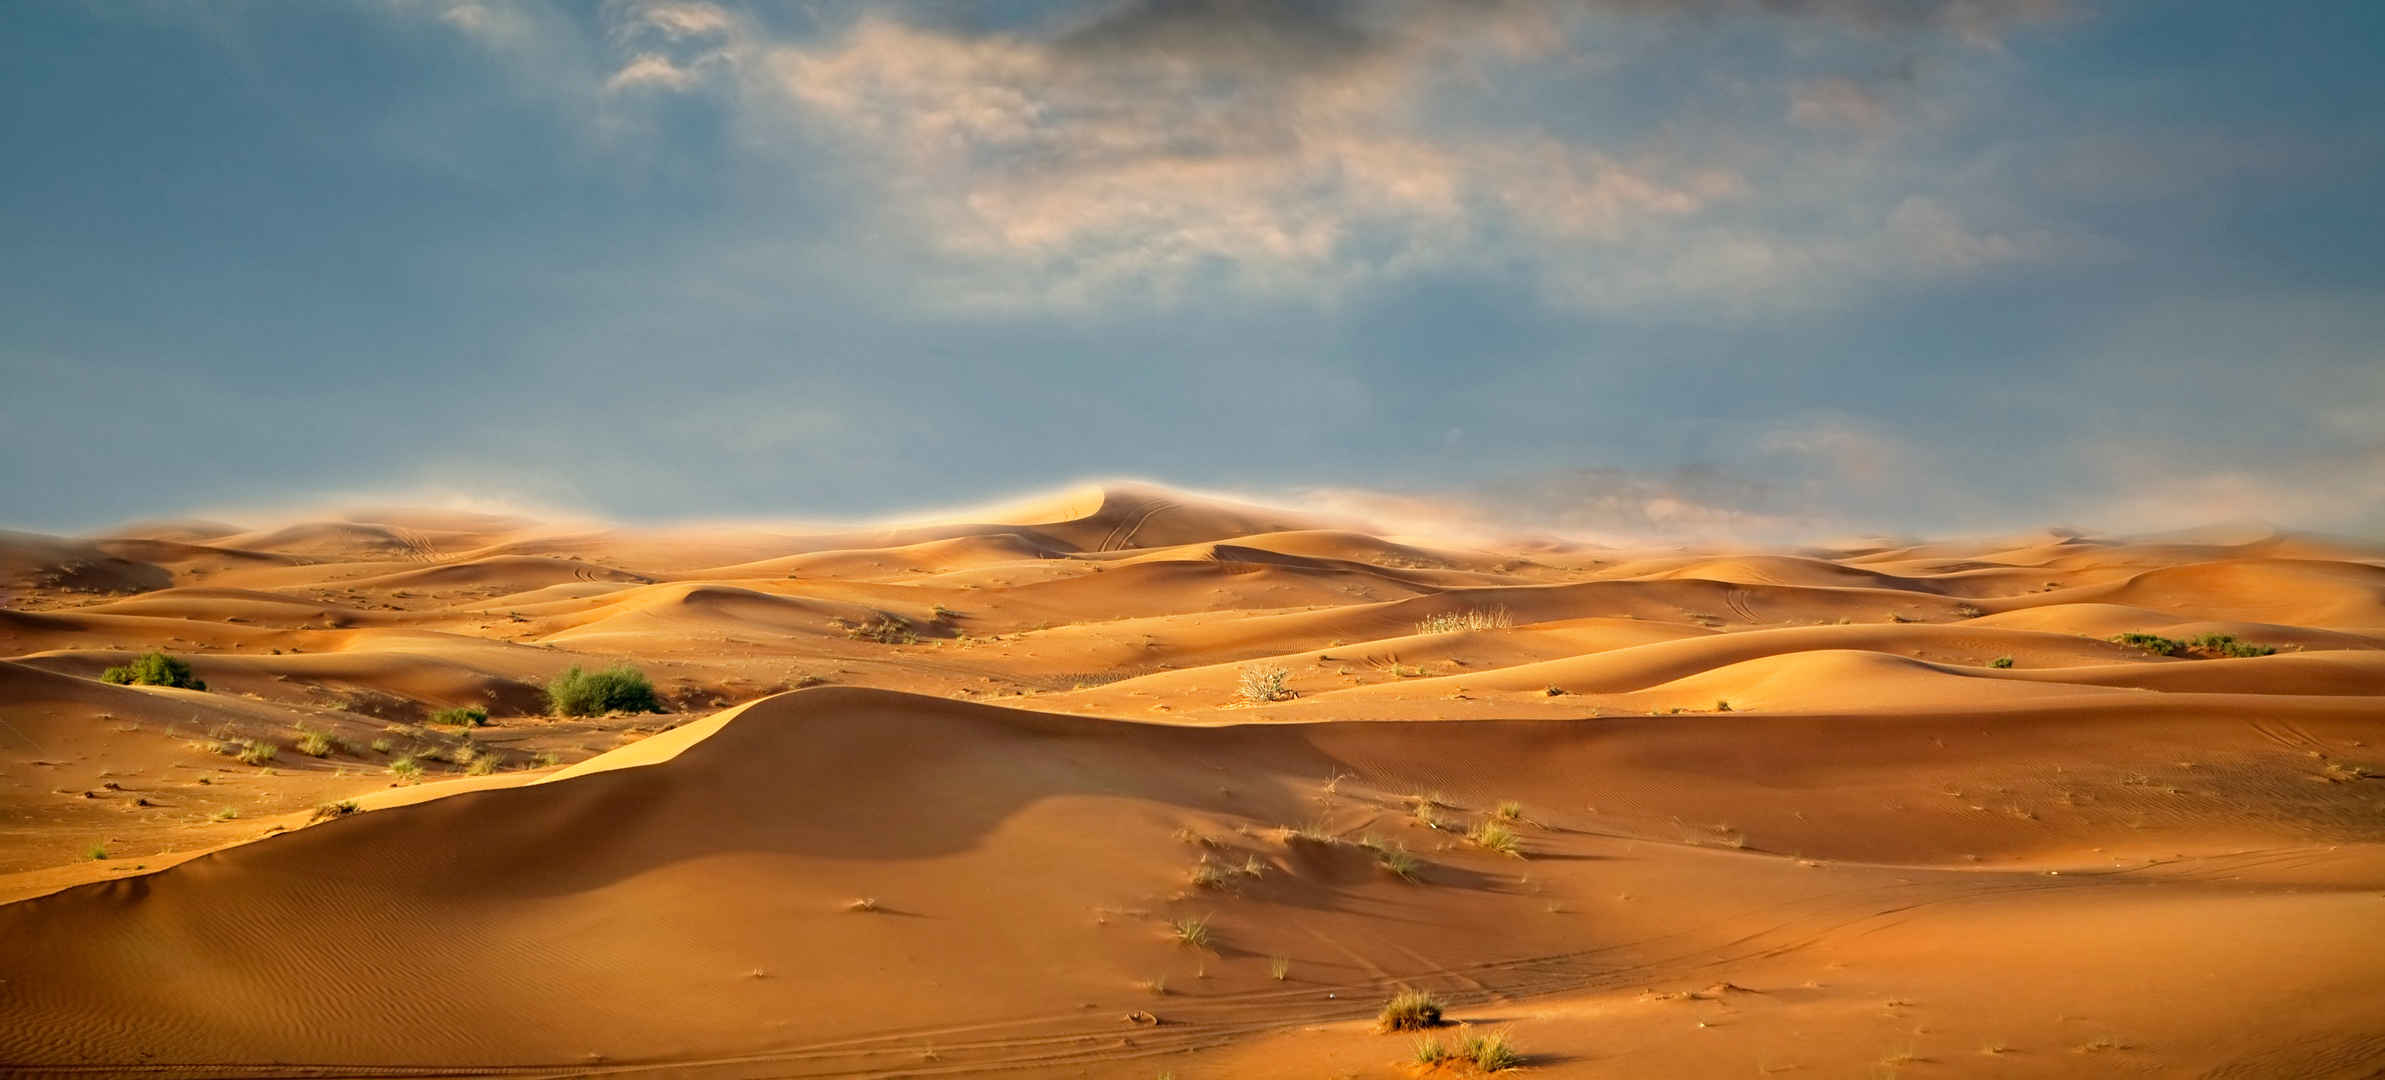 沙漠景观-